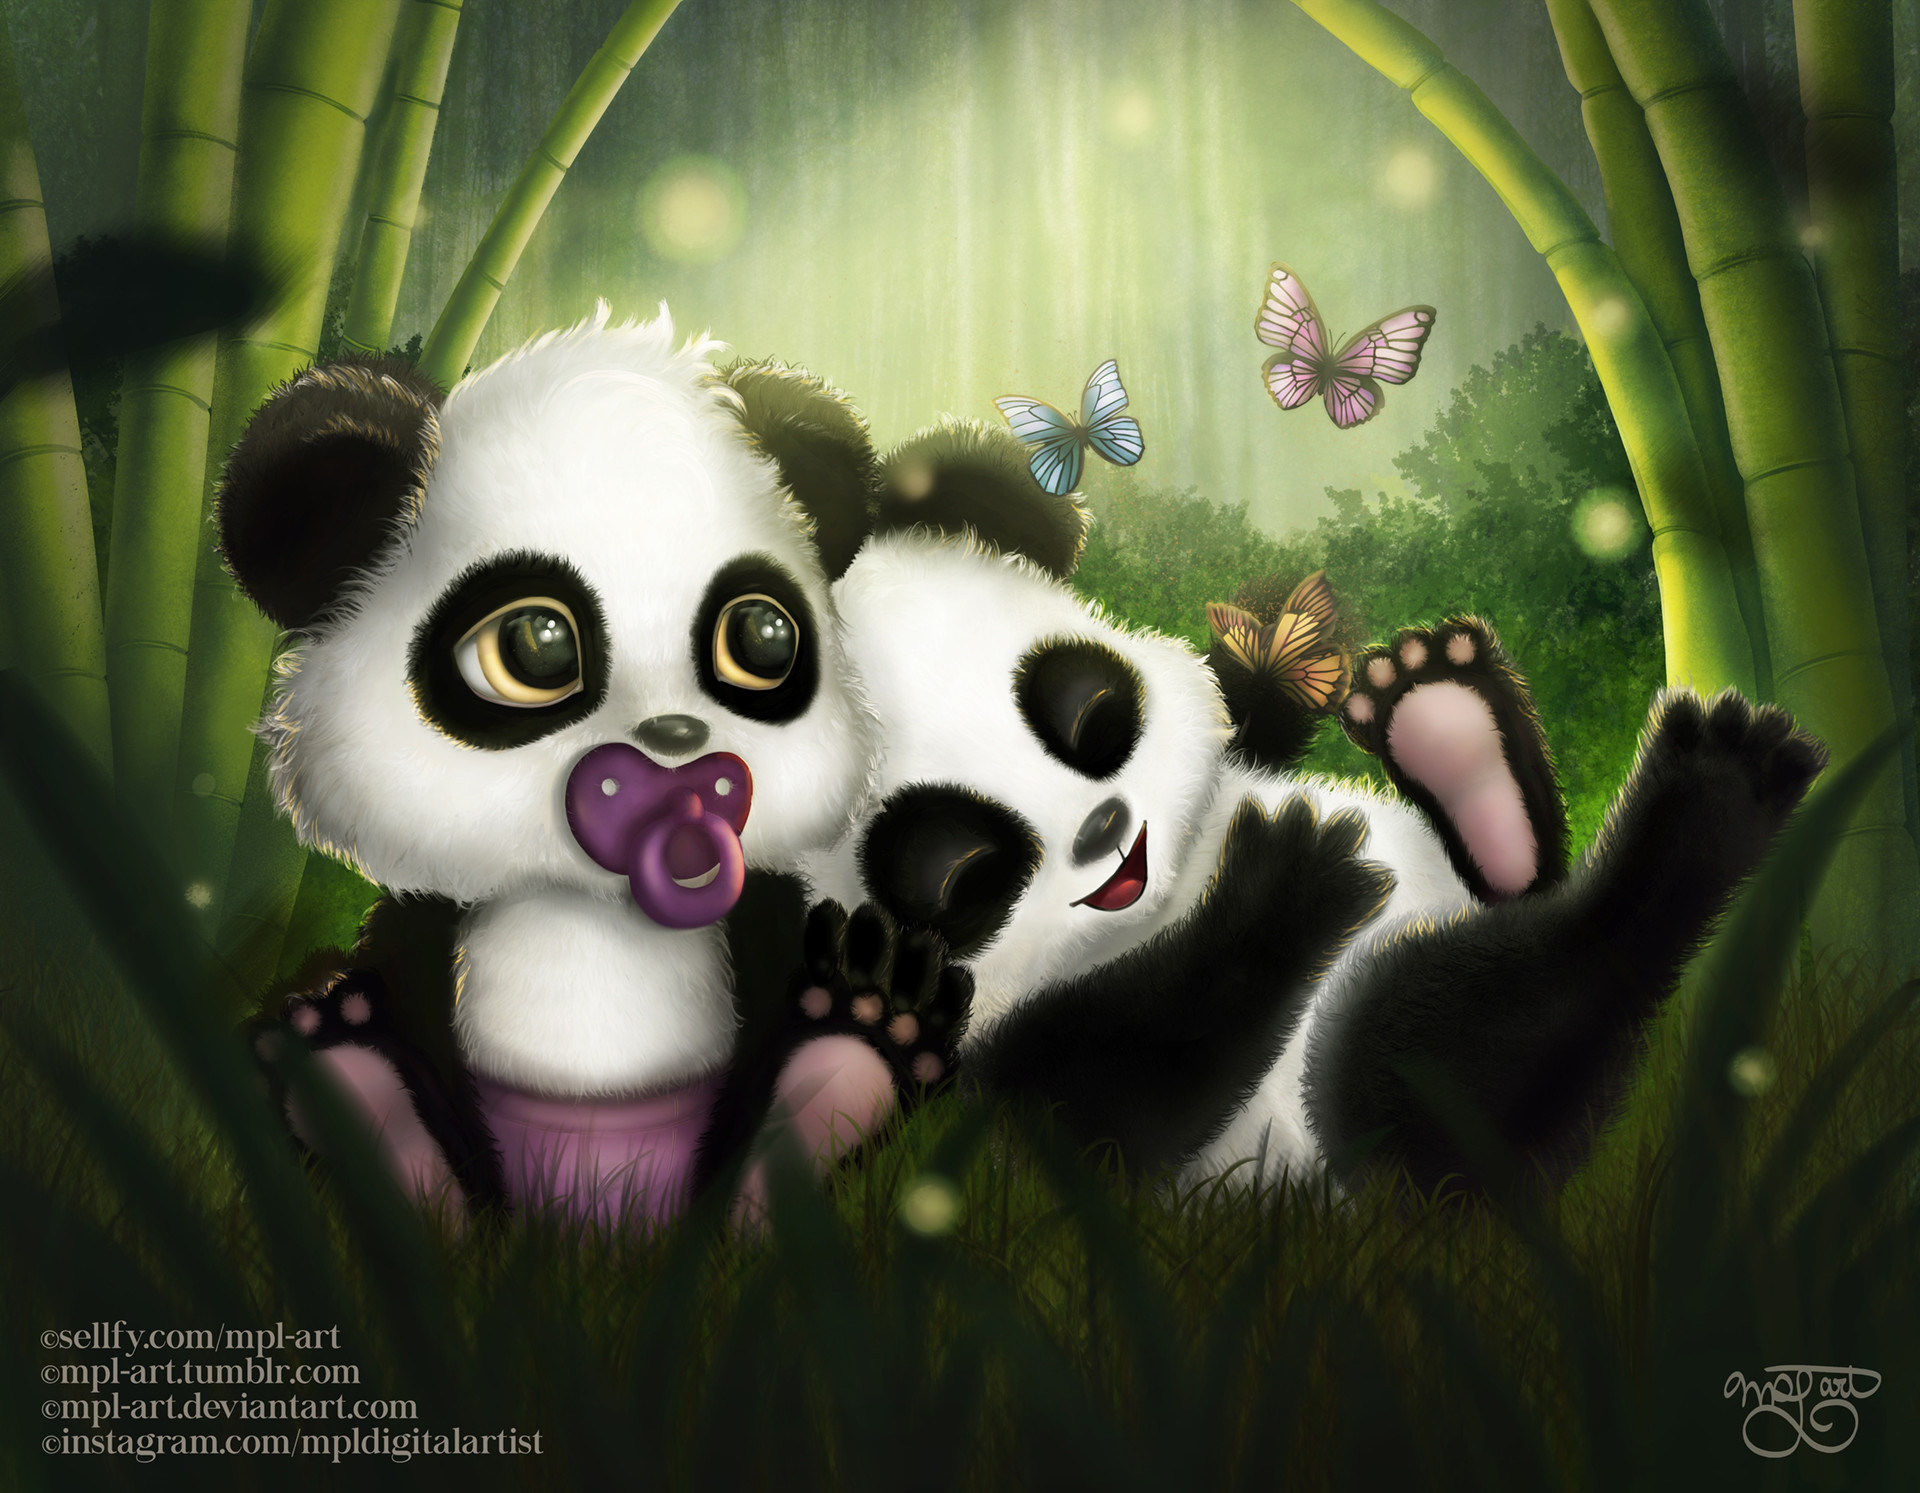 Mpl Art Baby Panda Bears